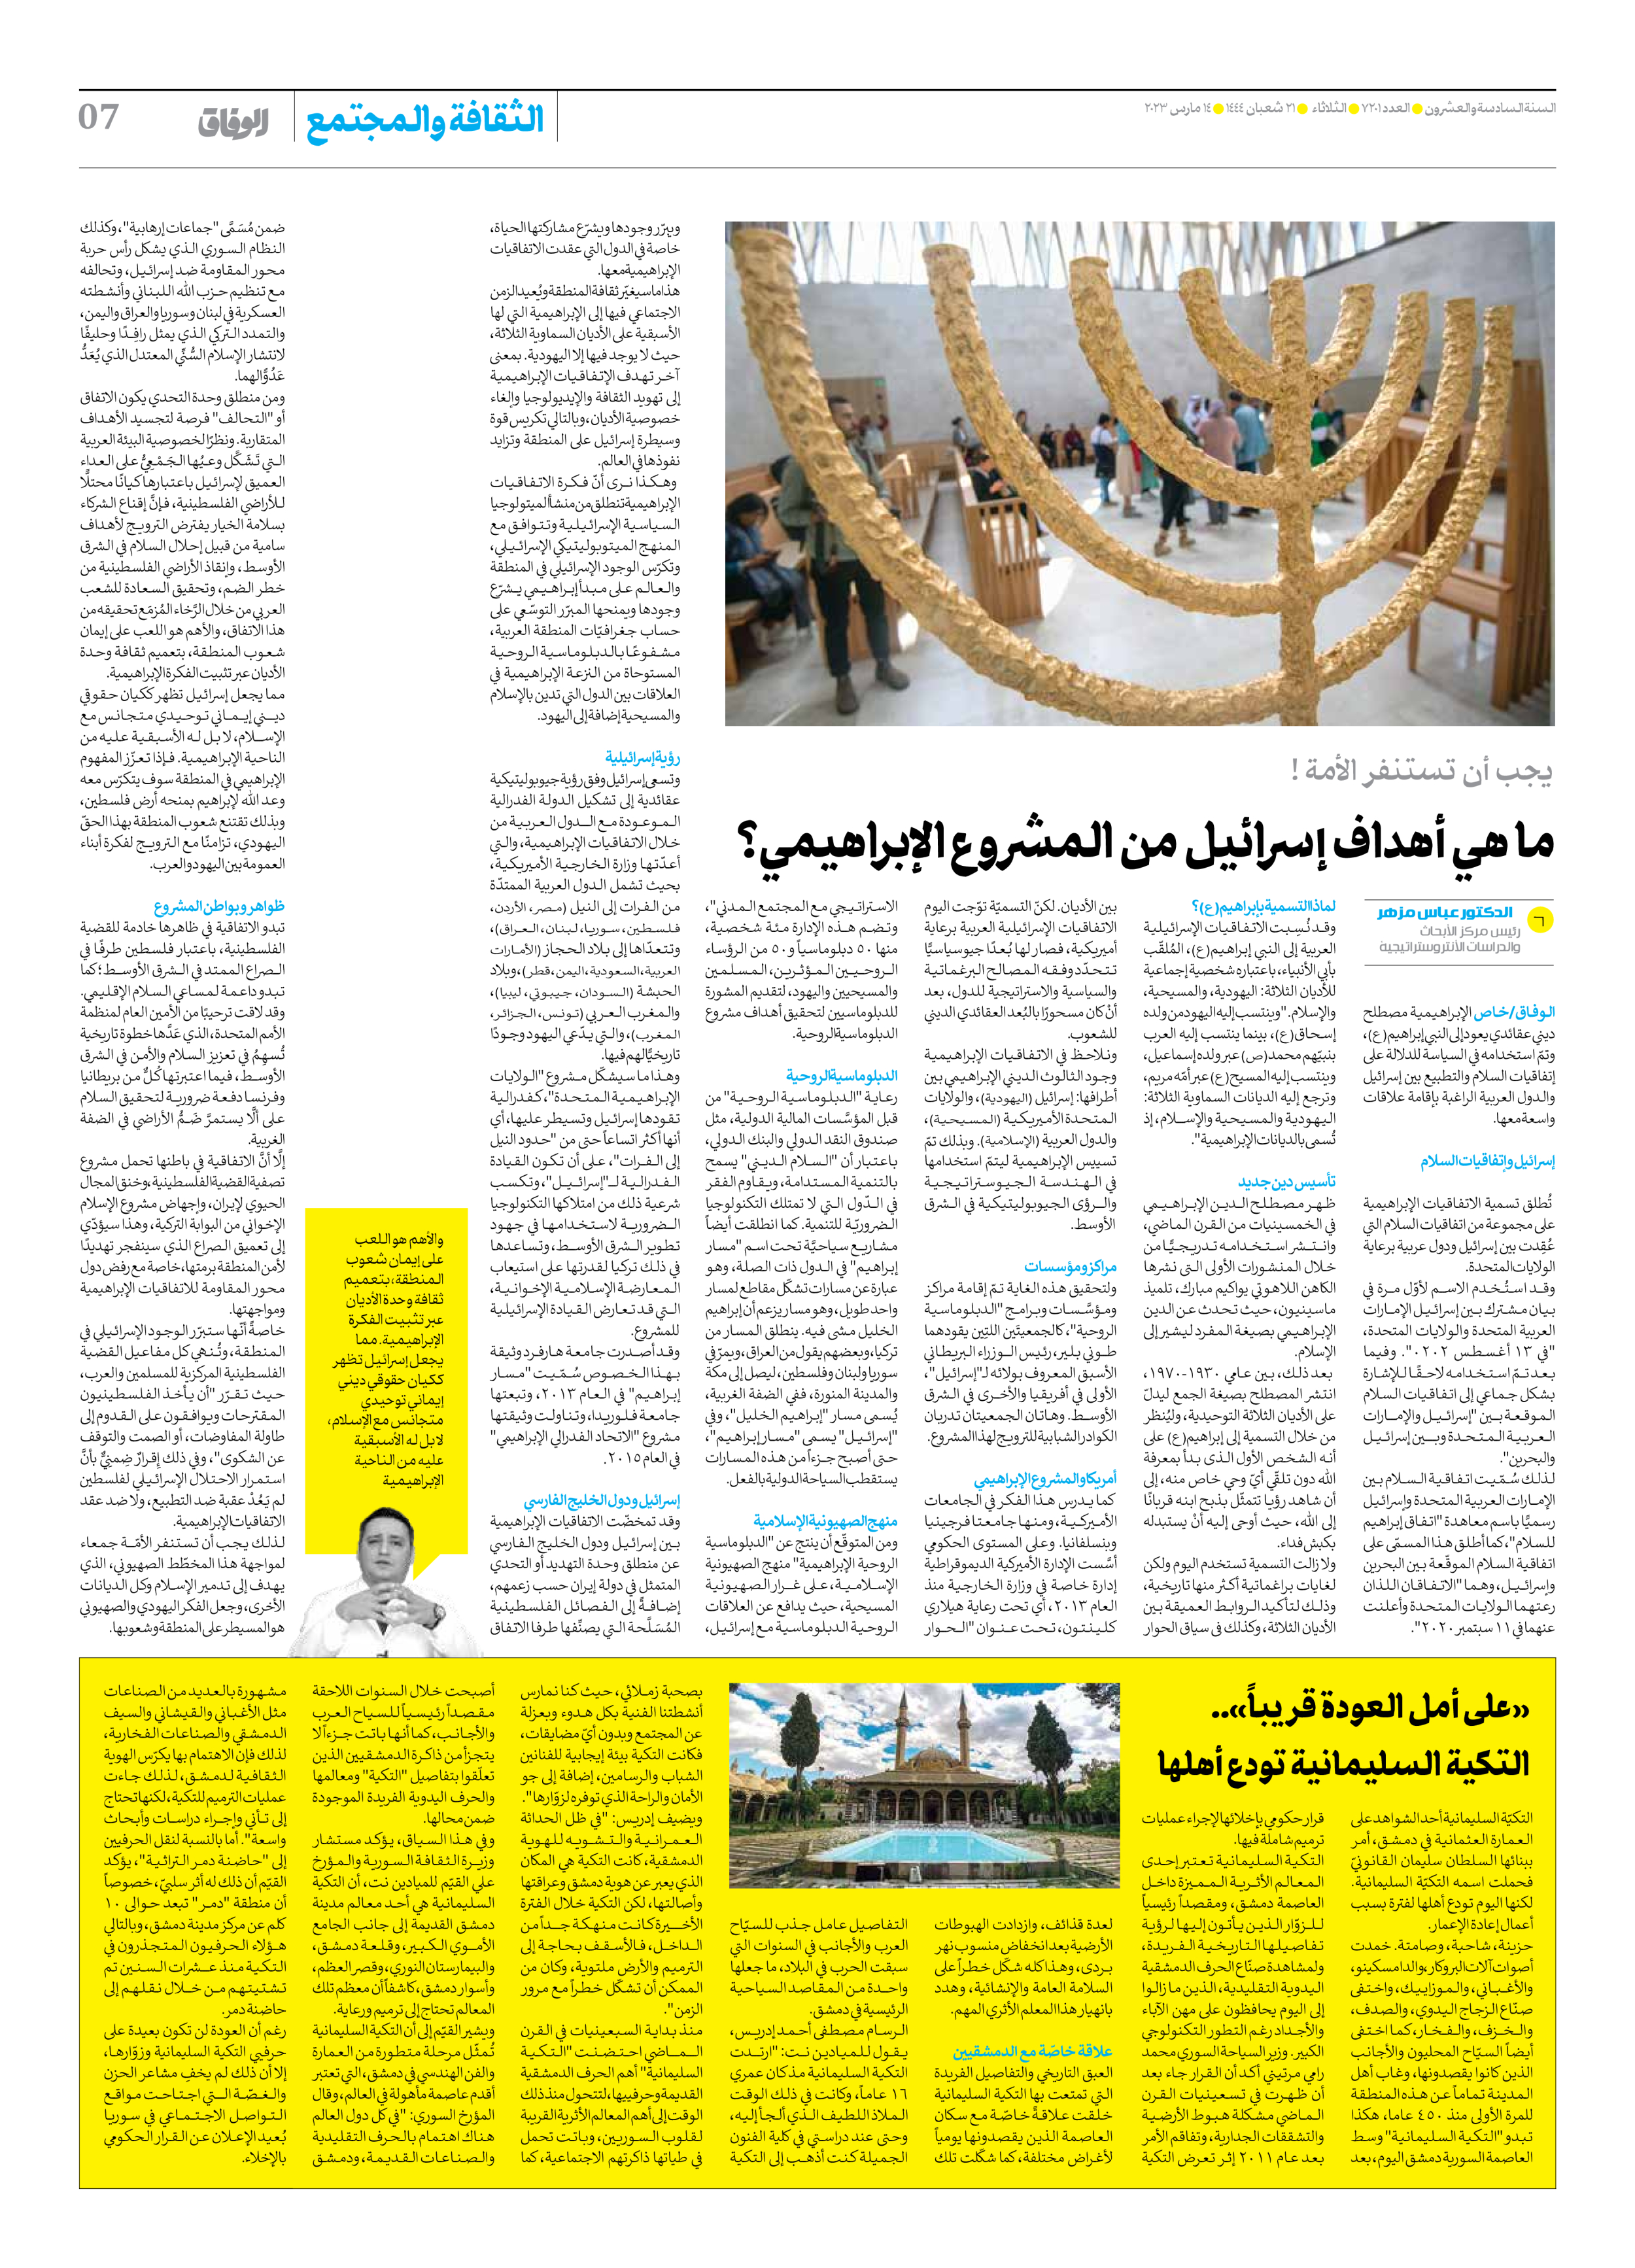 صحیفة ایران الدولیة الوفاق - العدد سبعة آلاف ومائتان وواحد - ١٤ مارس ٢٠٢٣ - الصفحة ۷